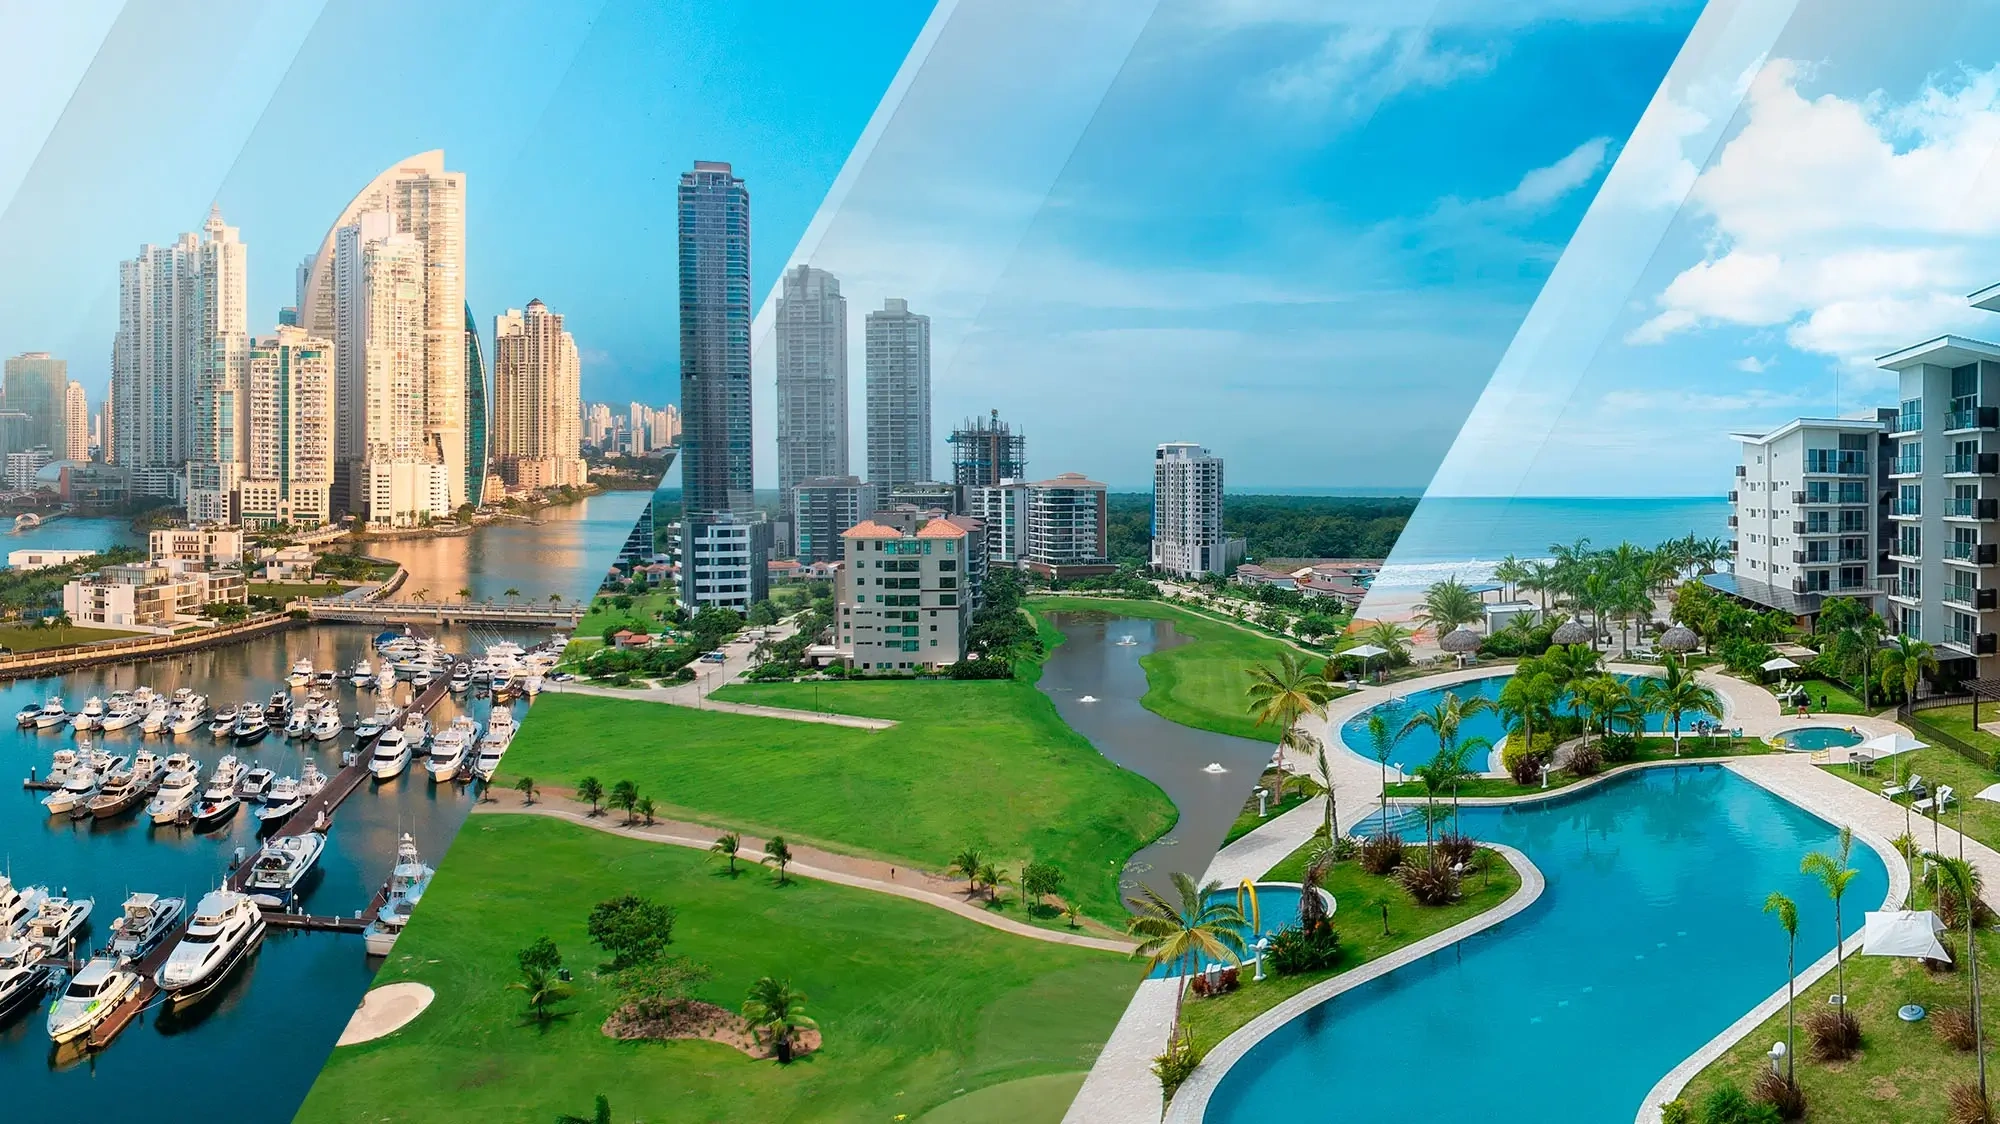 Centros comerciales: transformando la experiencia de inversiones en Panamá si vives en Cúcuta